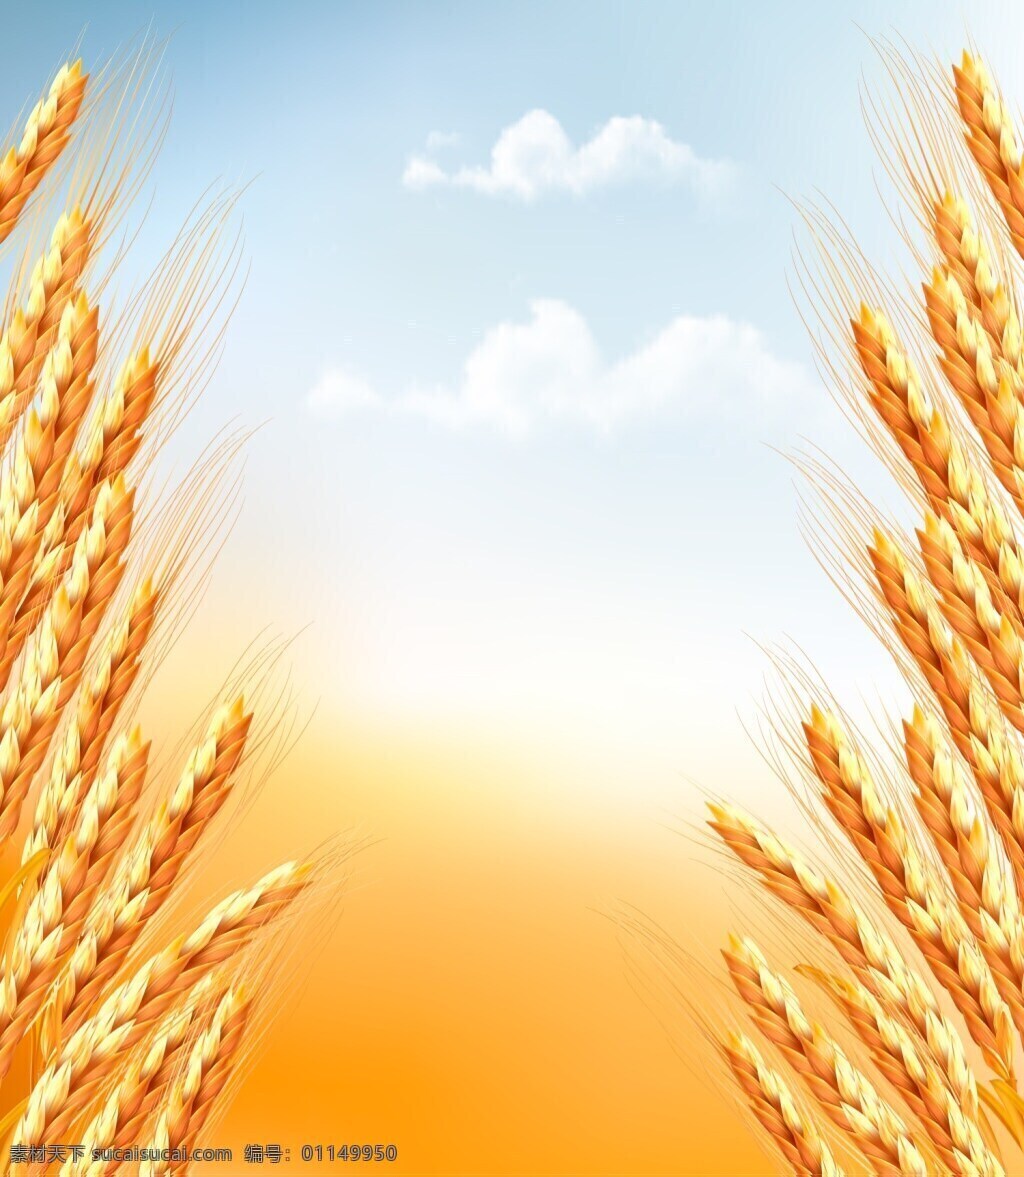 谷物 小麦 相关 矢量 金色 矢量素材 设计素材 背景素材 平面设计